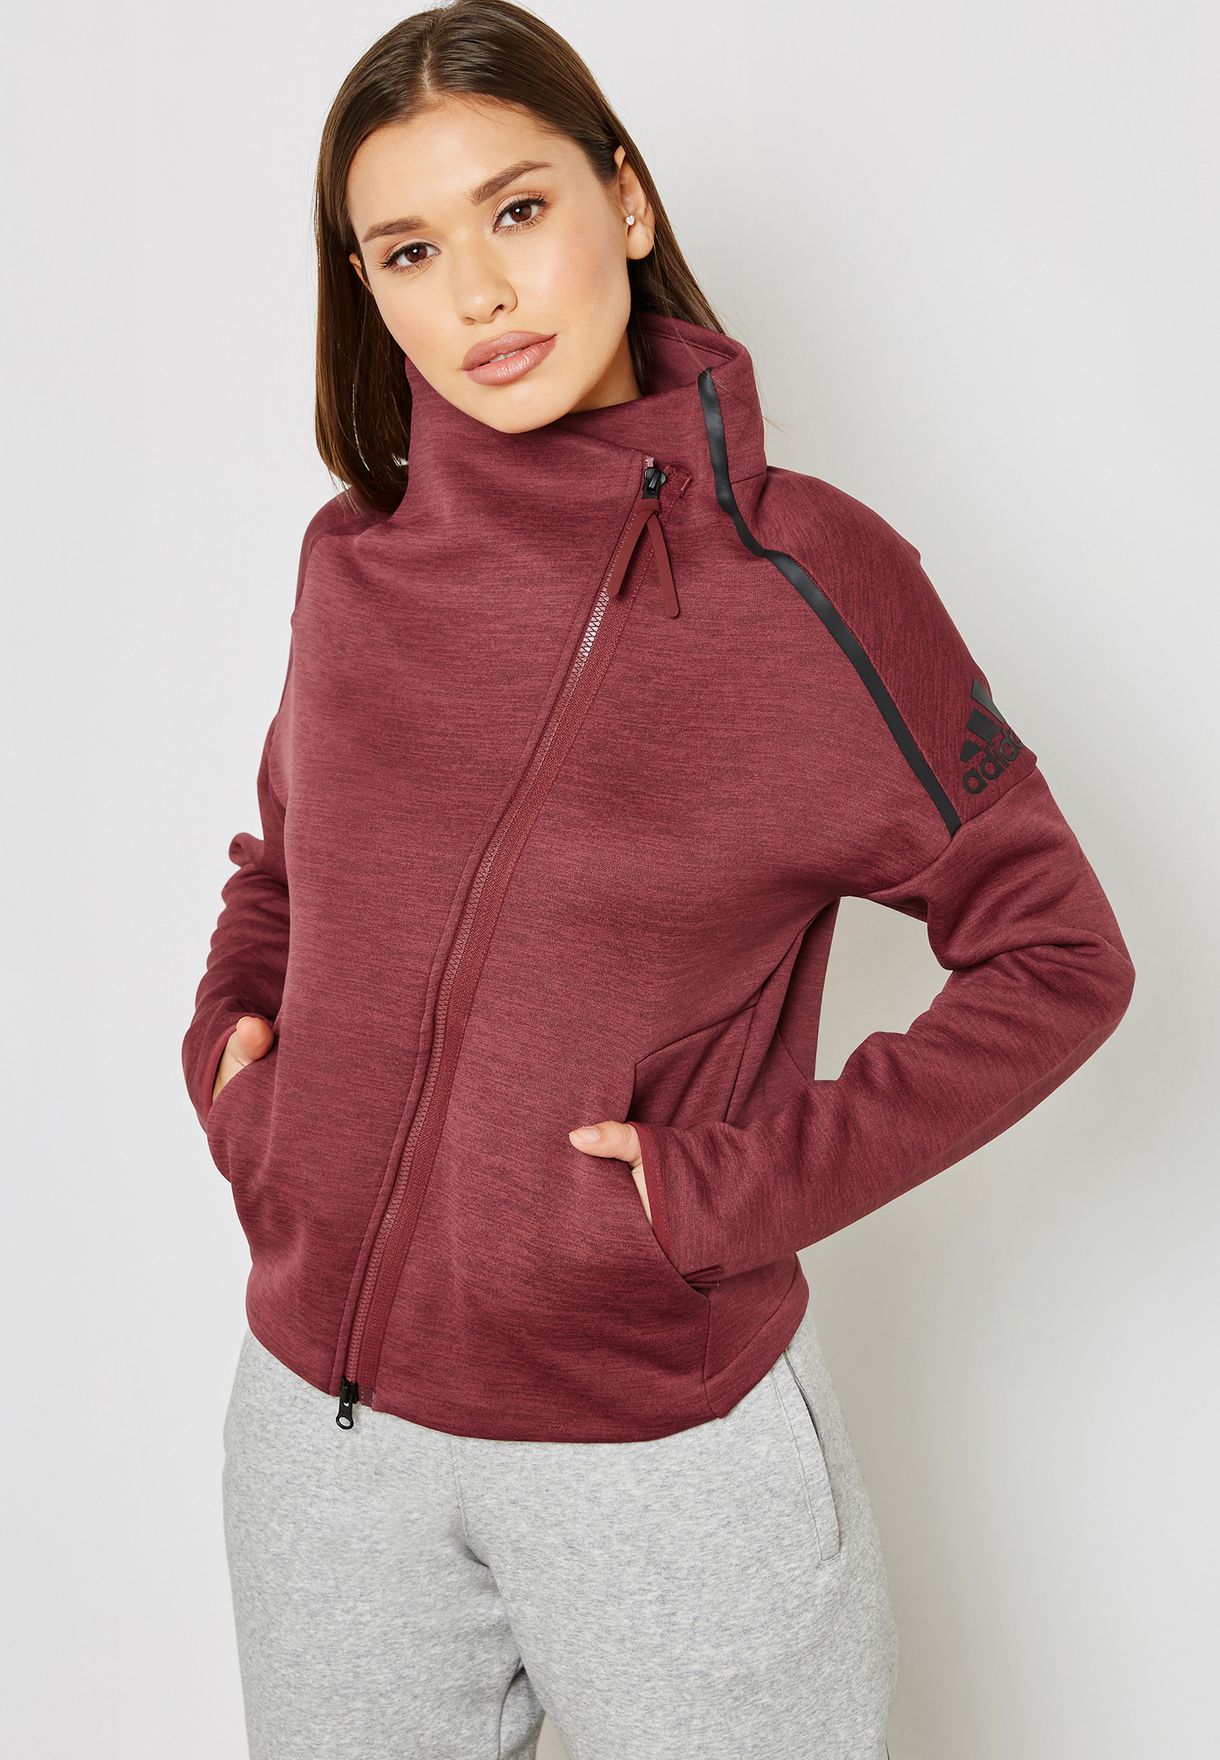 burgundy adidas hoodie womens